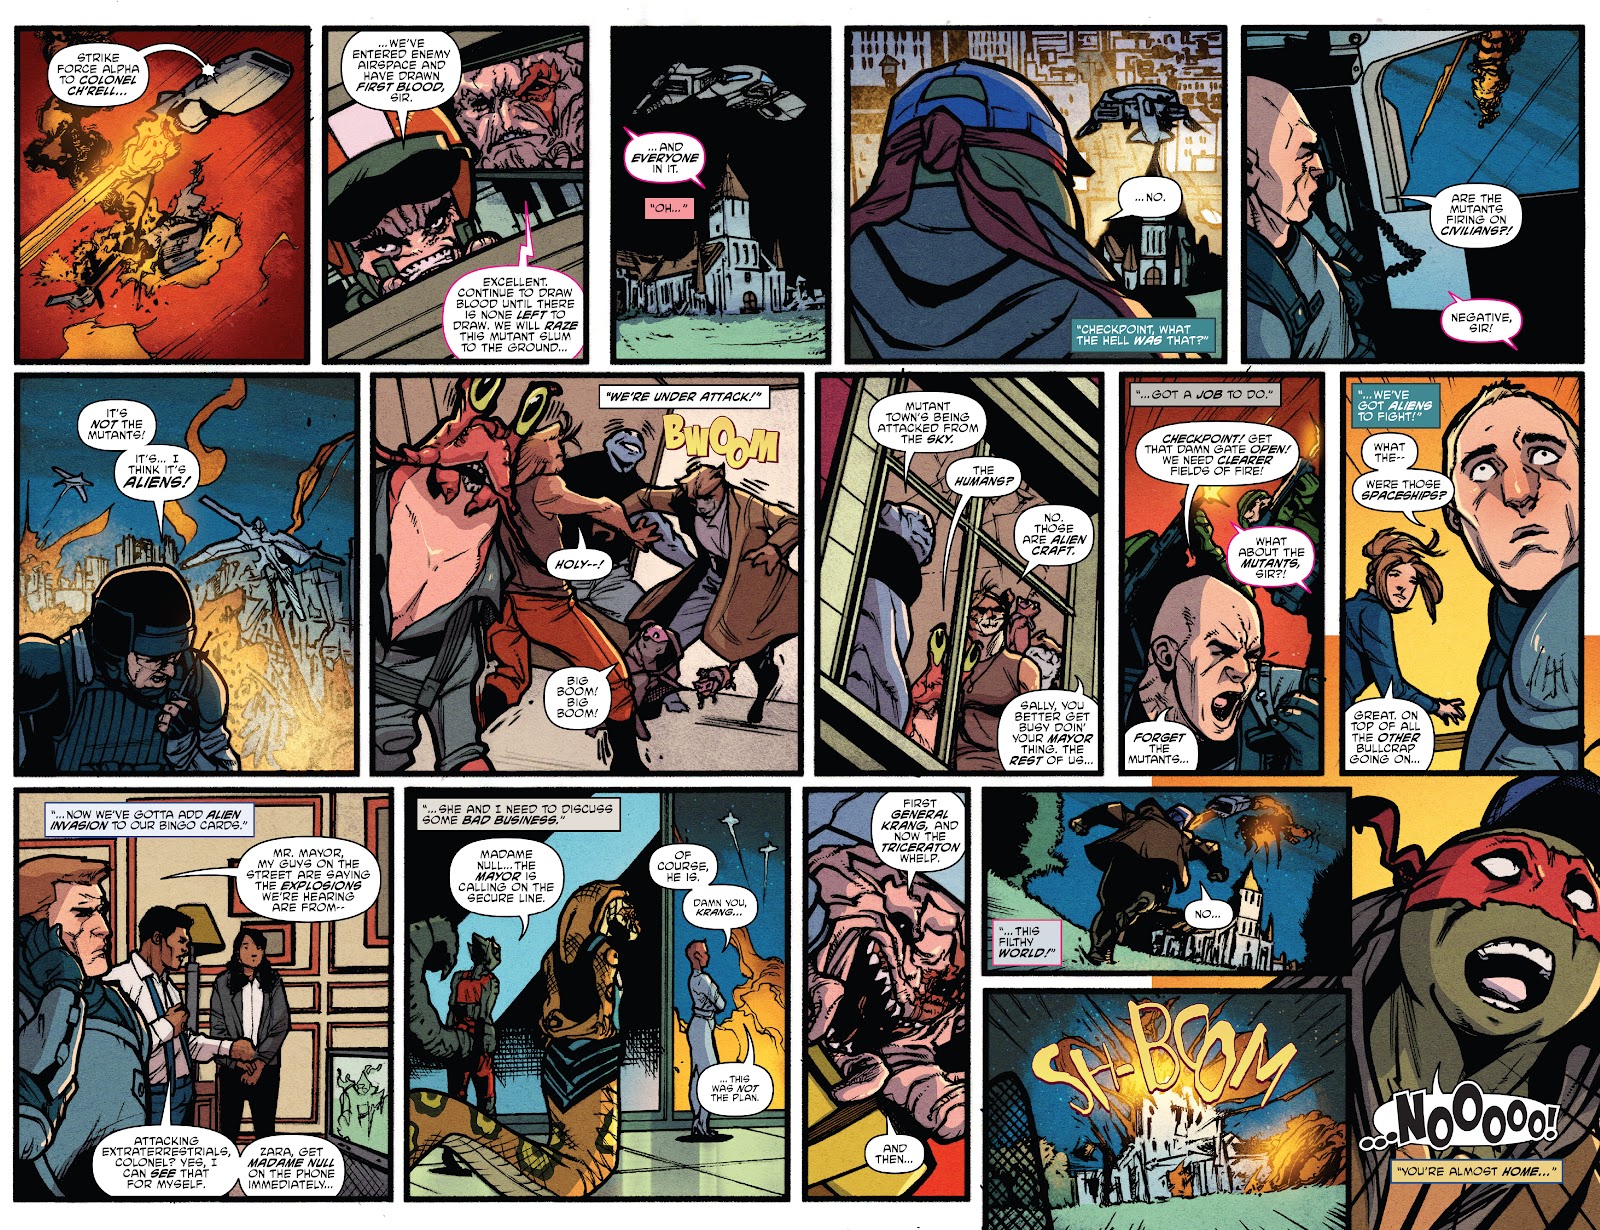 Teenage Mutant Ninja Turtles: The Armageddon Game issue 5 - Page 25